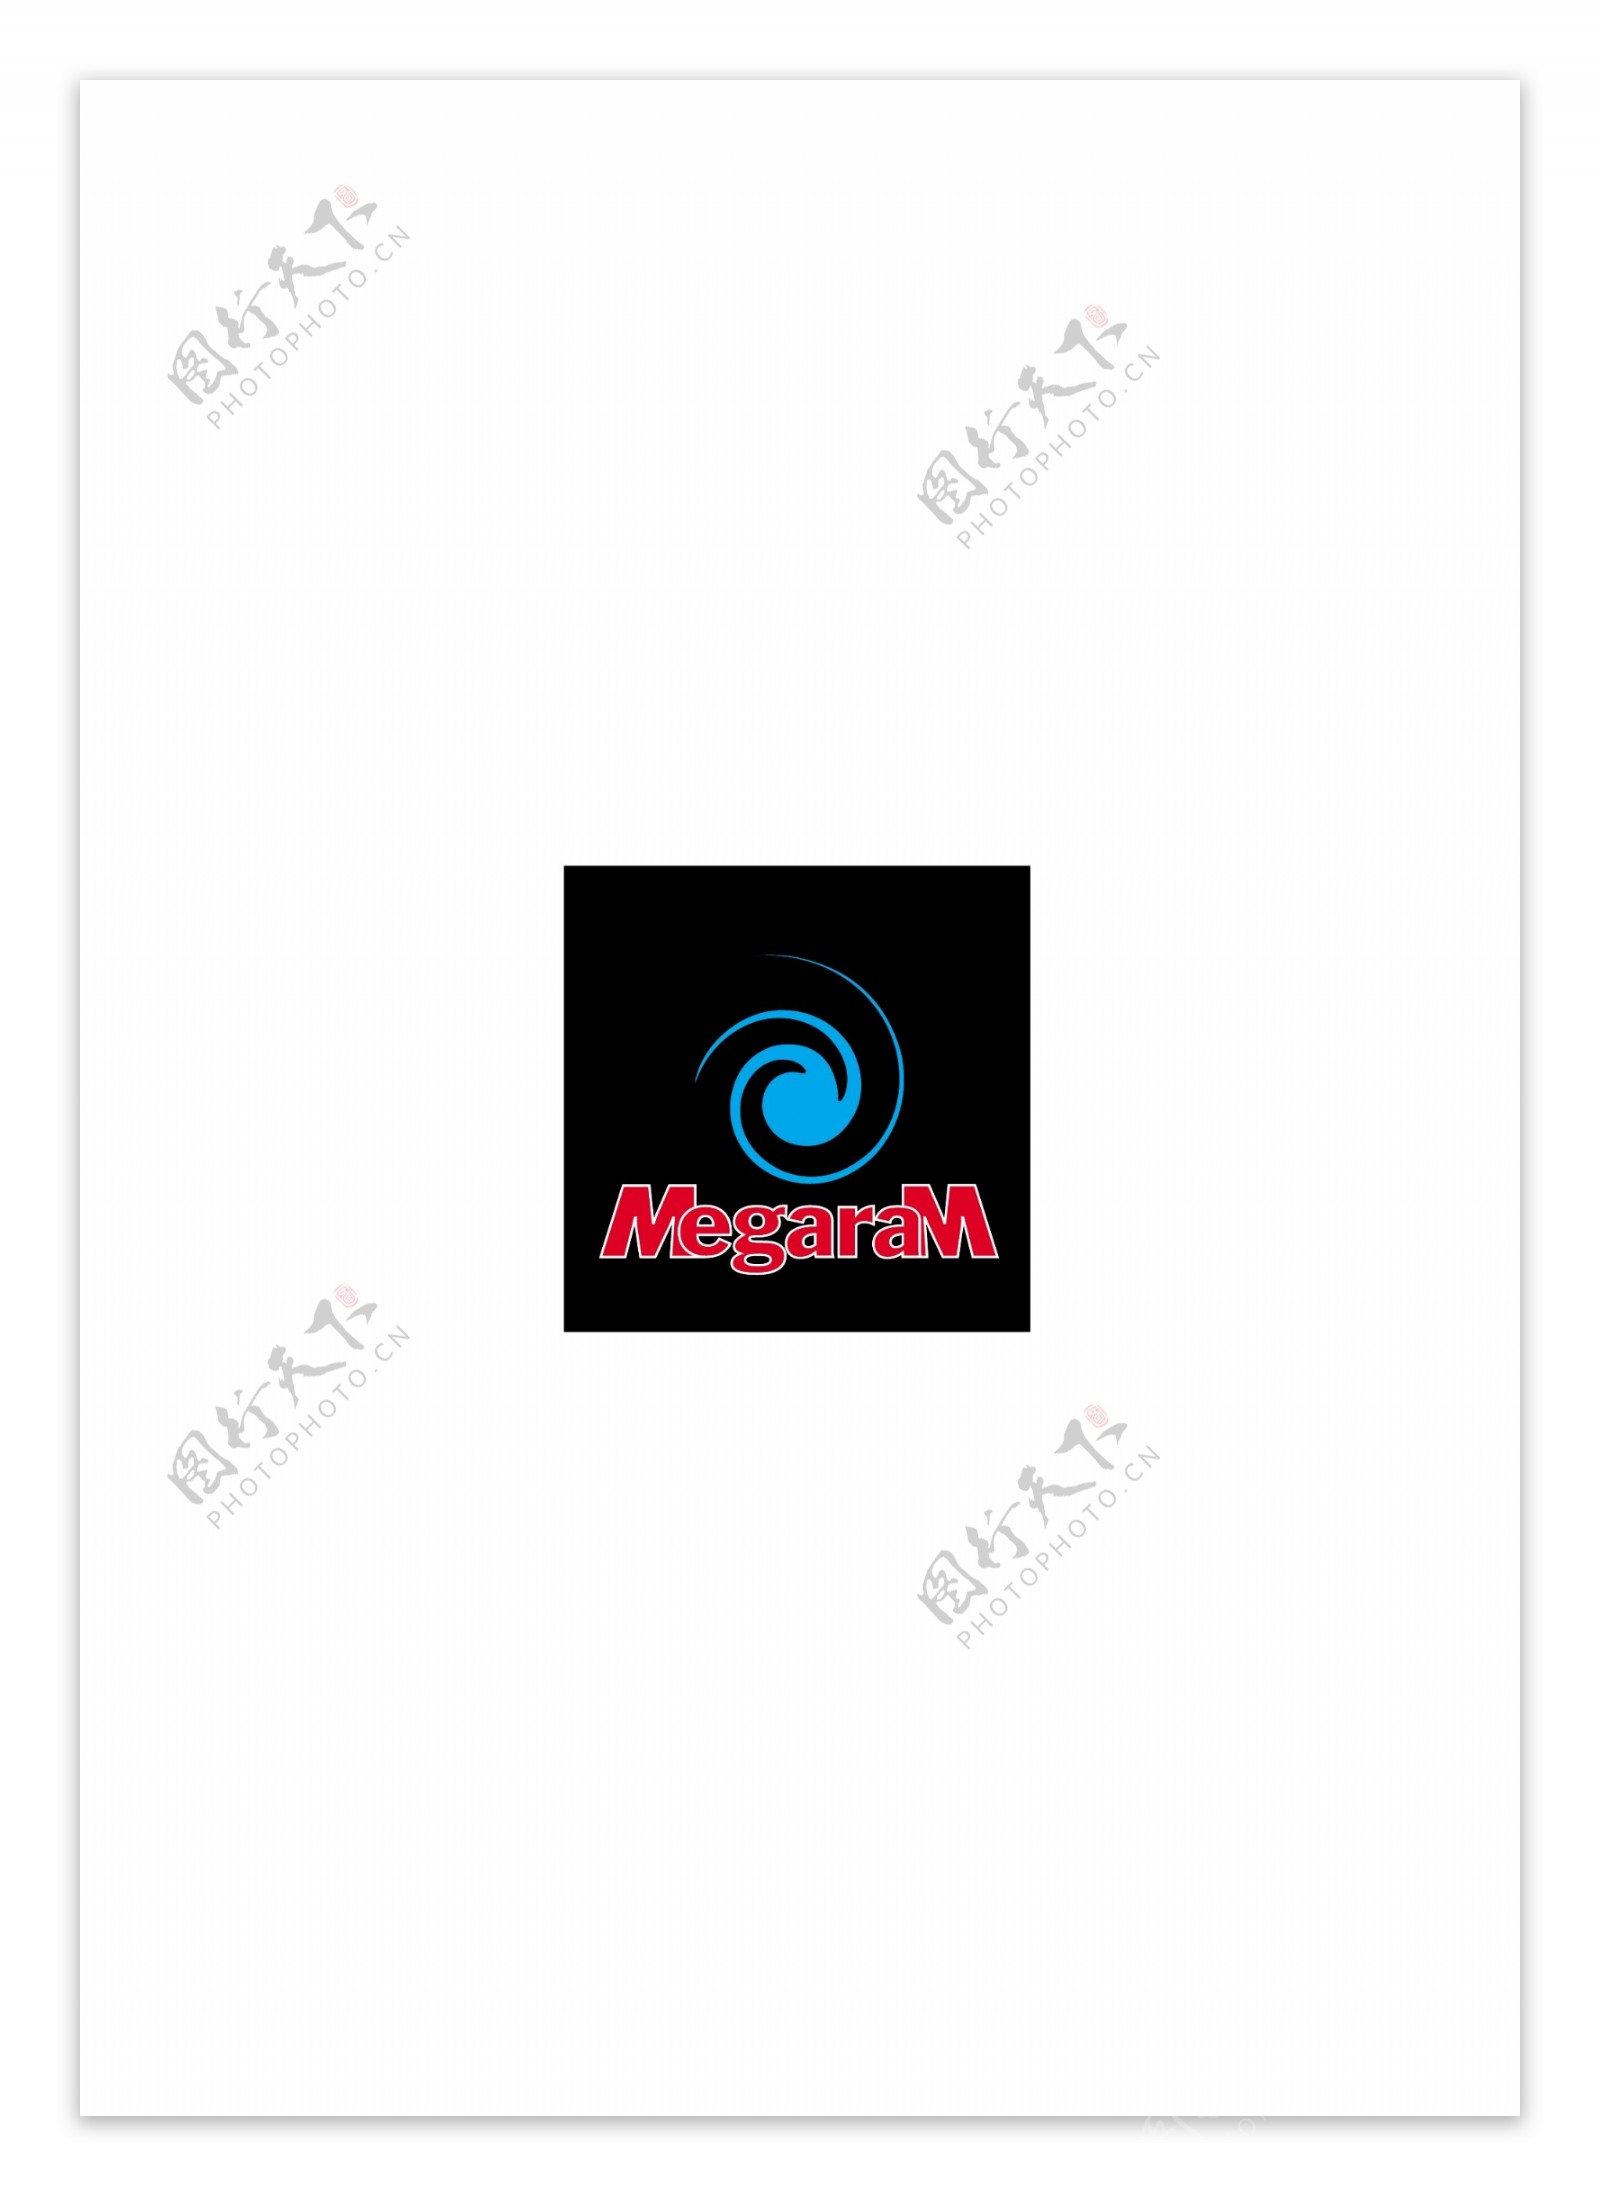 MegaraMlogo设计欣赏MegaraM手机公司LOGO下载标志设计欣赏